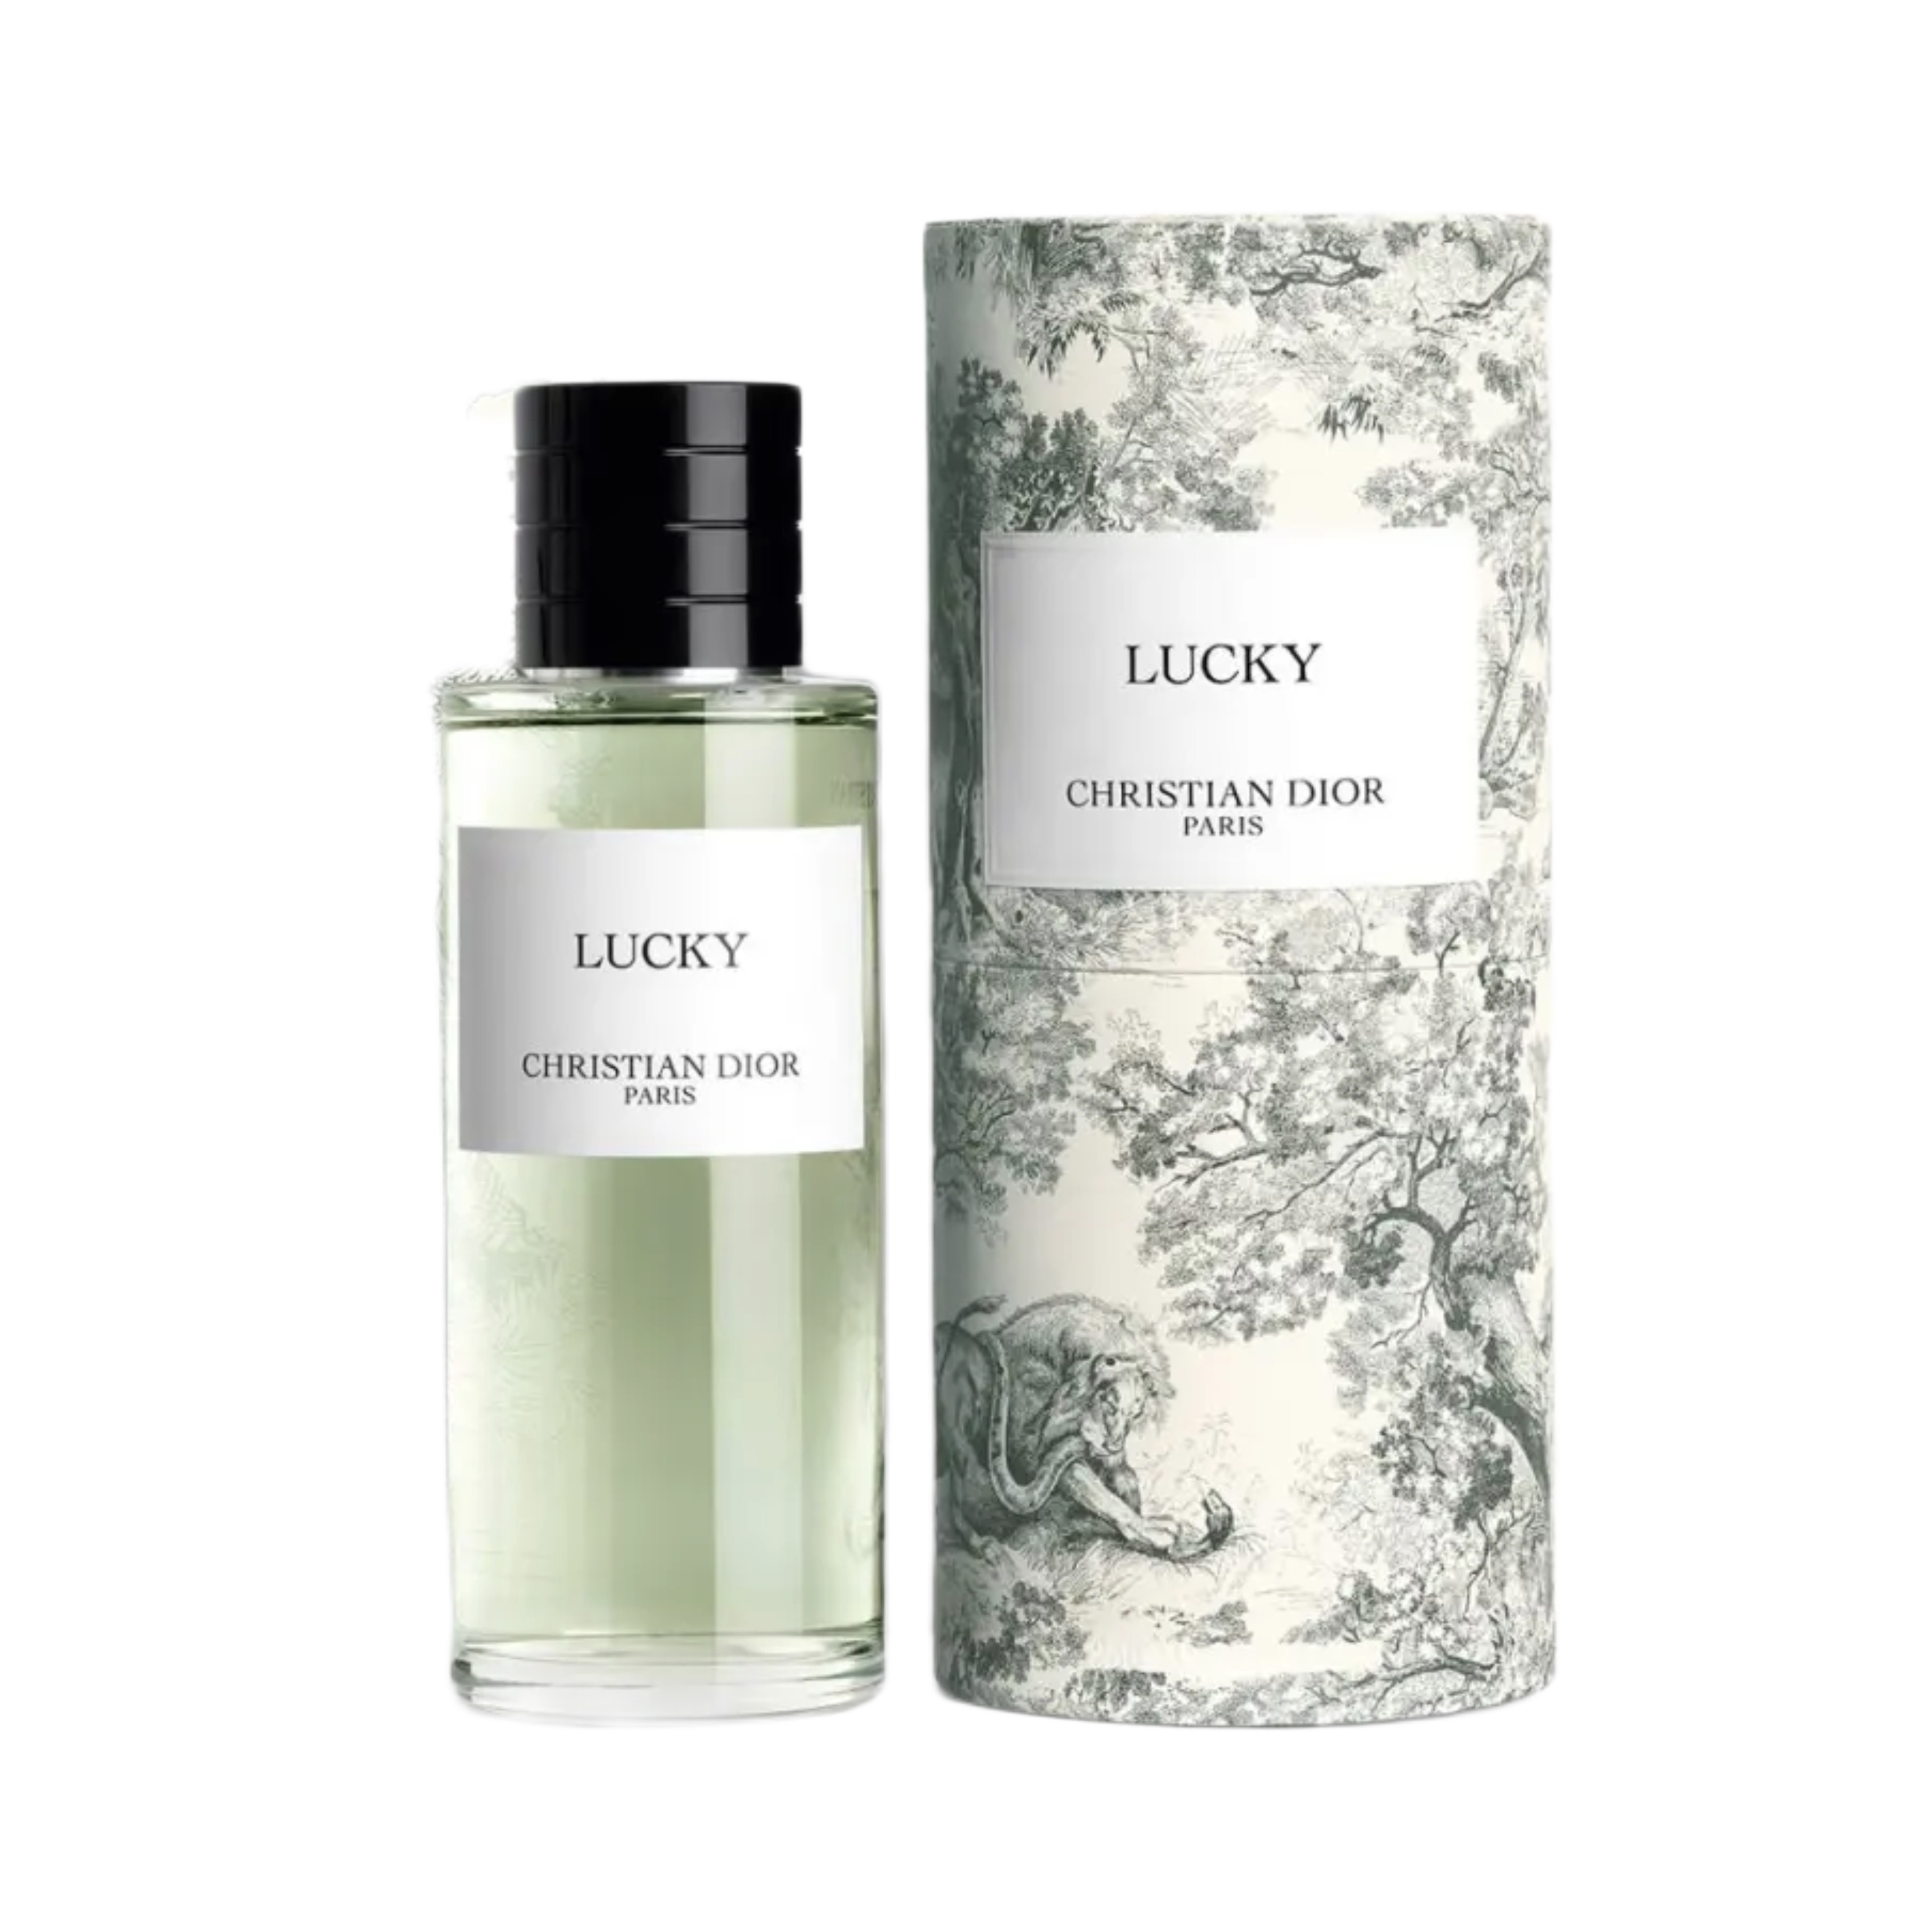 A toile de Jouy jungle showcases Dior perfume  Wallpaper